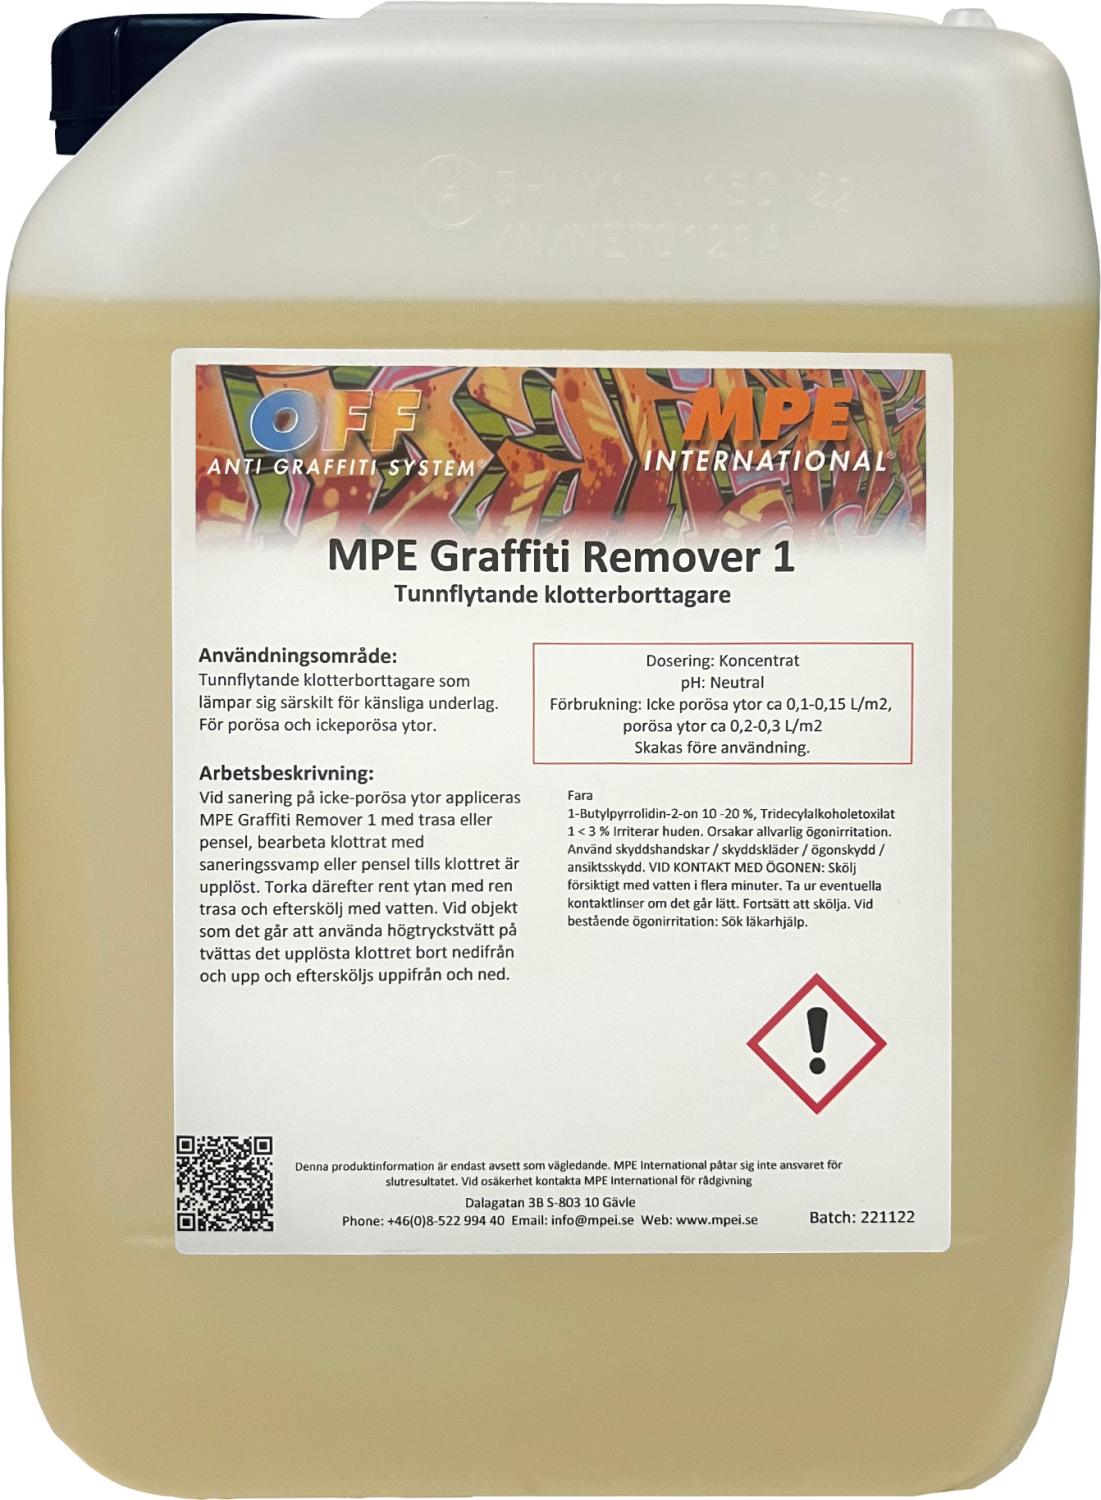 MPE Graffiti Remover 1